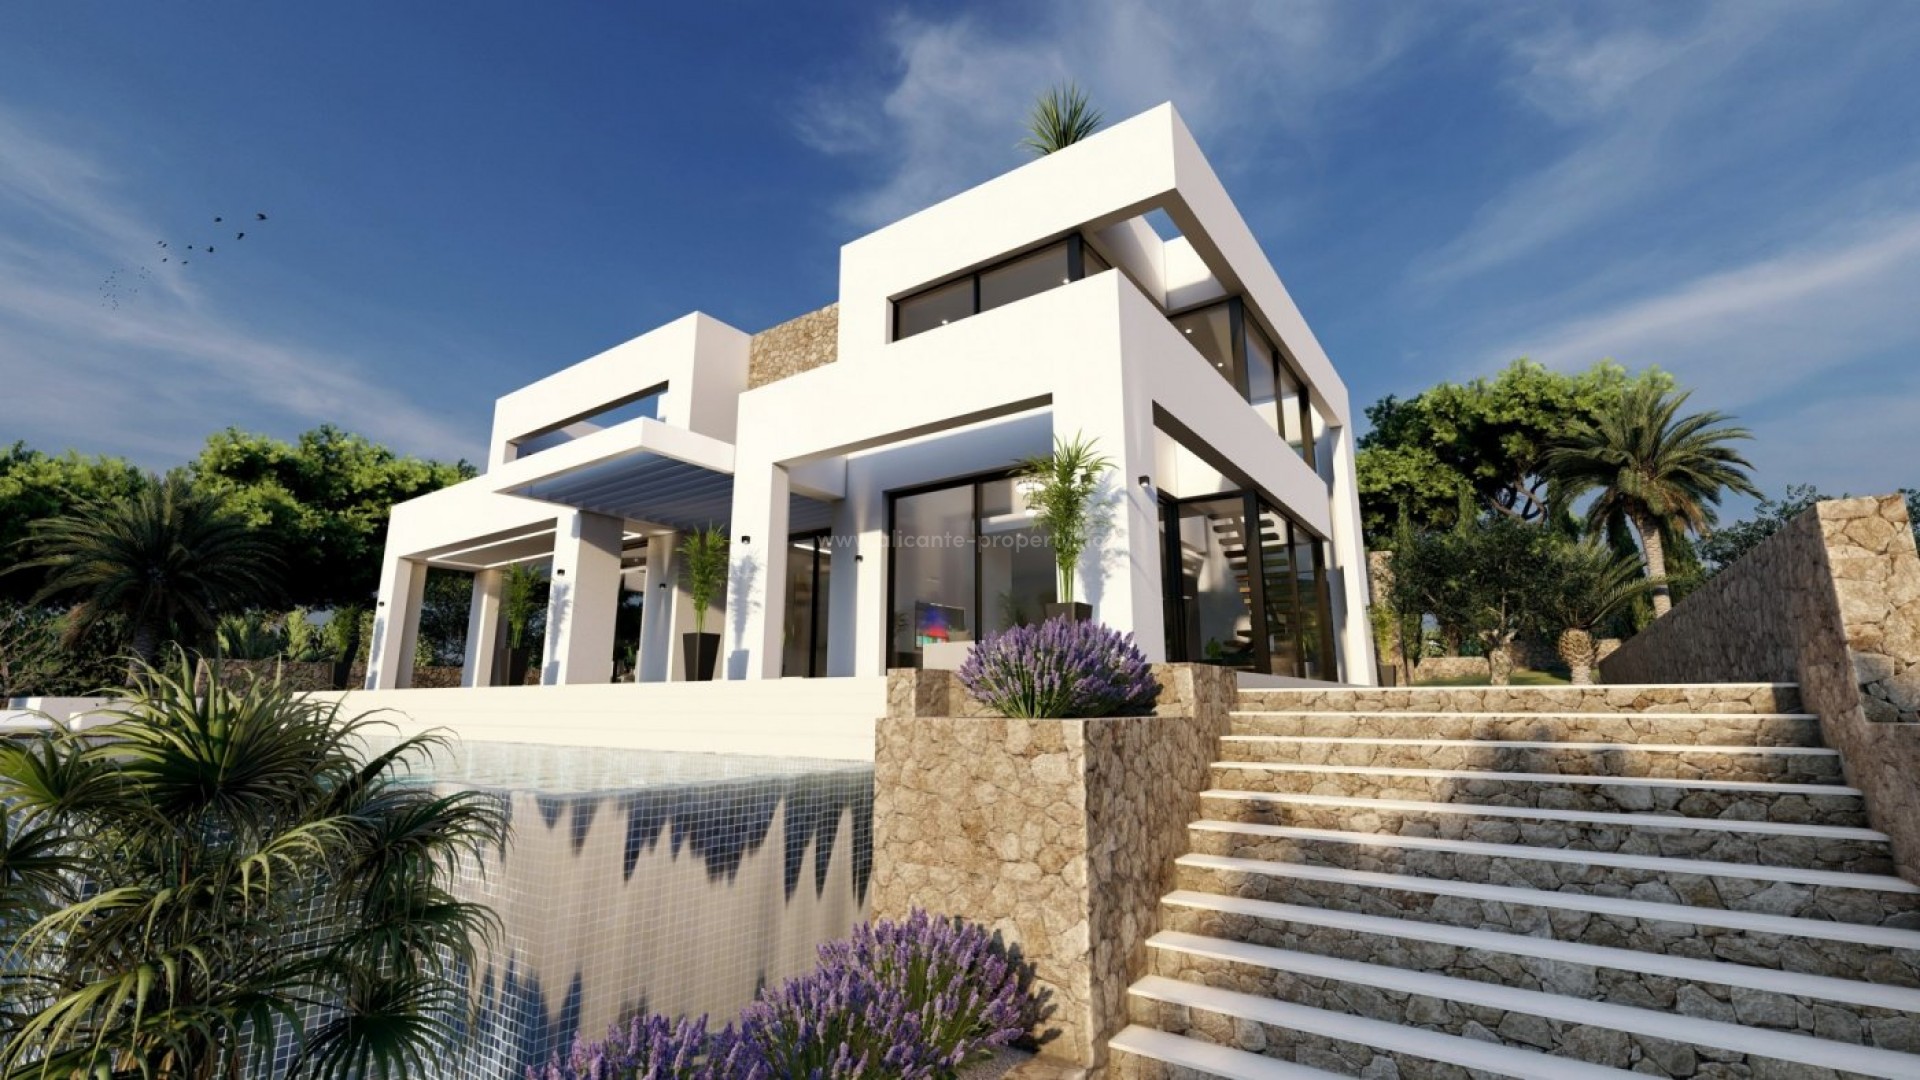 Luksus-villa i Benissa med 4 soverom og 4 bad, stort evighetsbasseng, terrasser, gjennomført kvalitet i hele huset